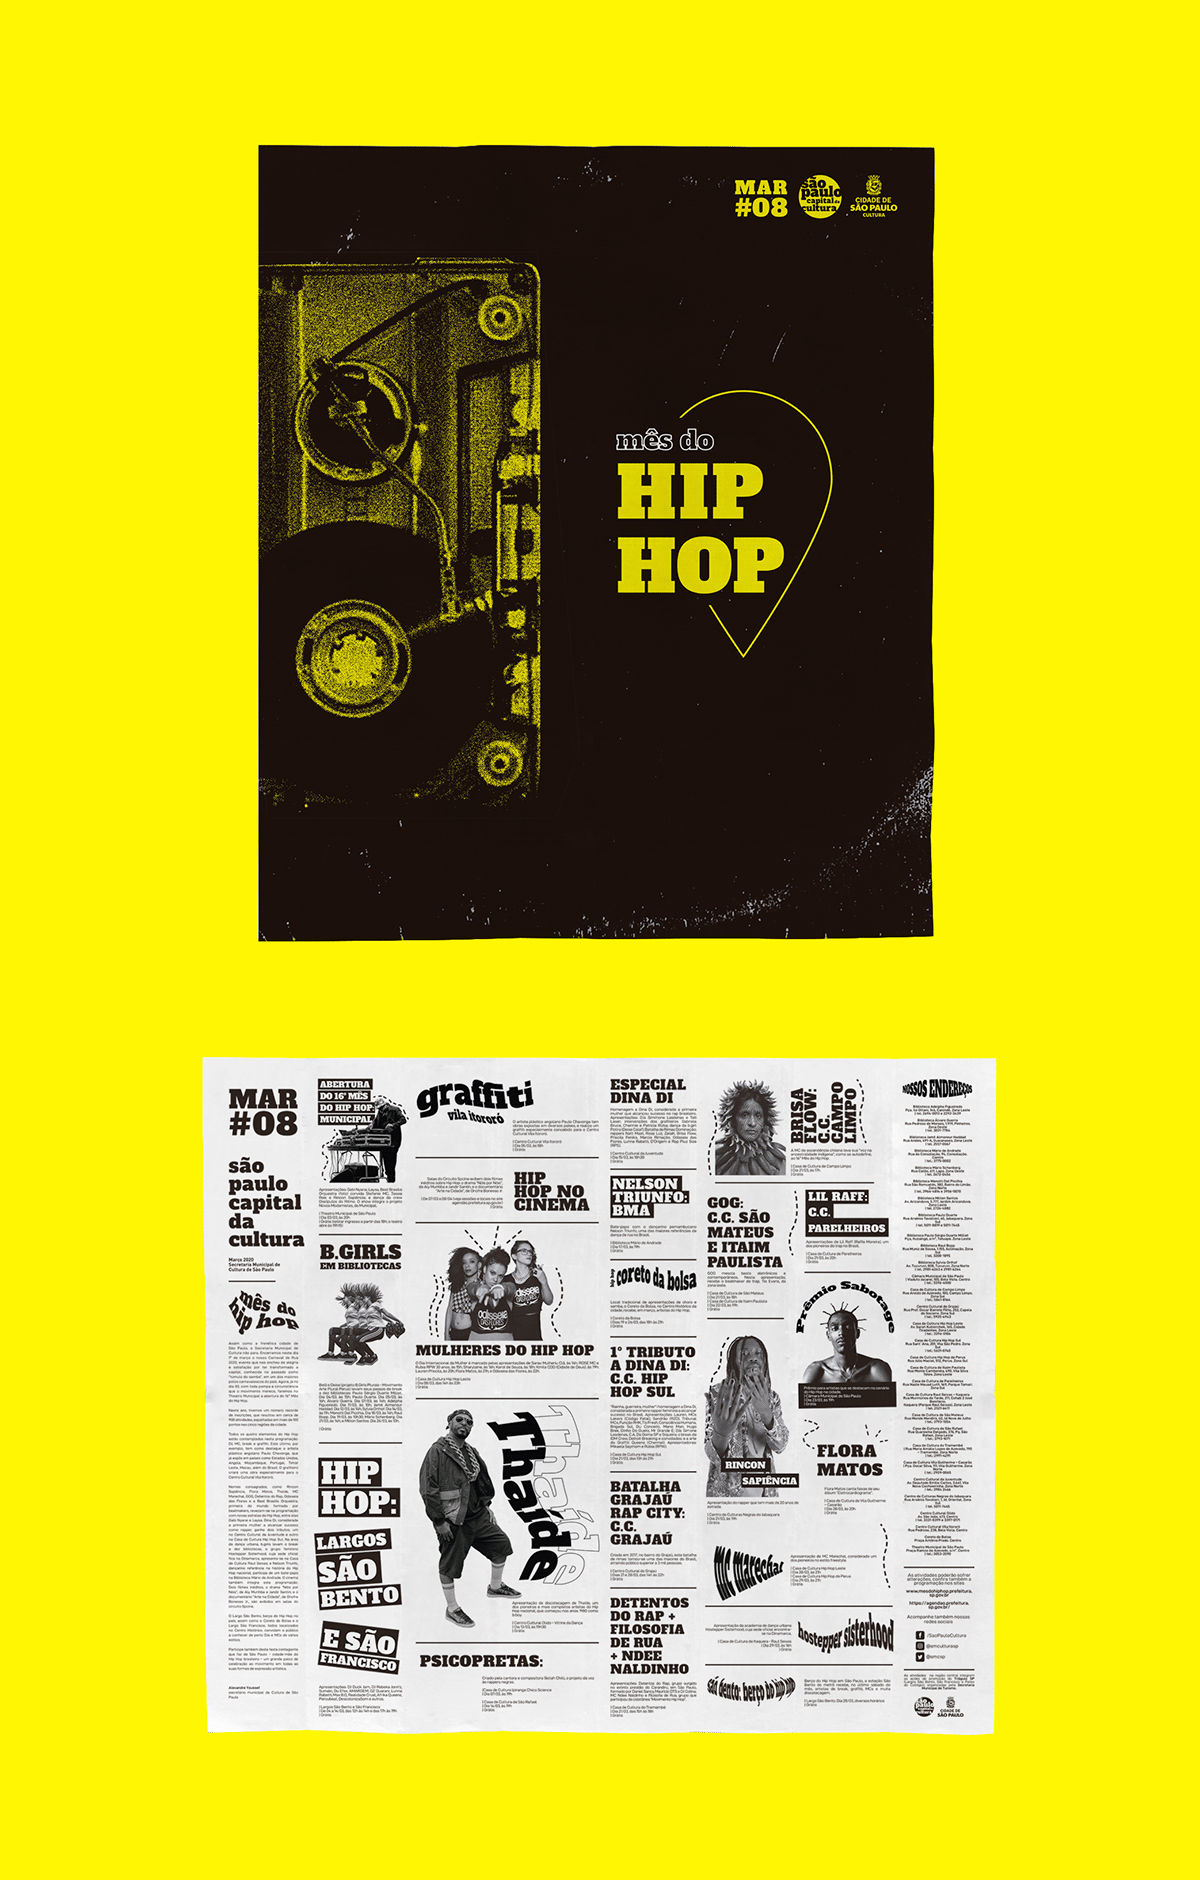 Bibliotecas centro cultural consciencia negra cultura hip hop identidade visual jornal são paulo theatro municipal verão sem censura